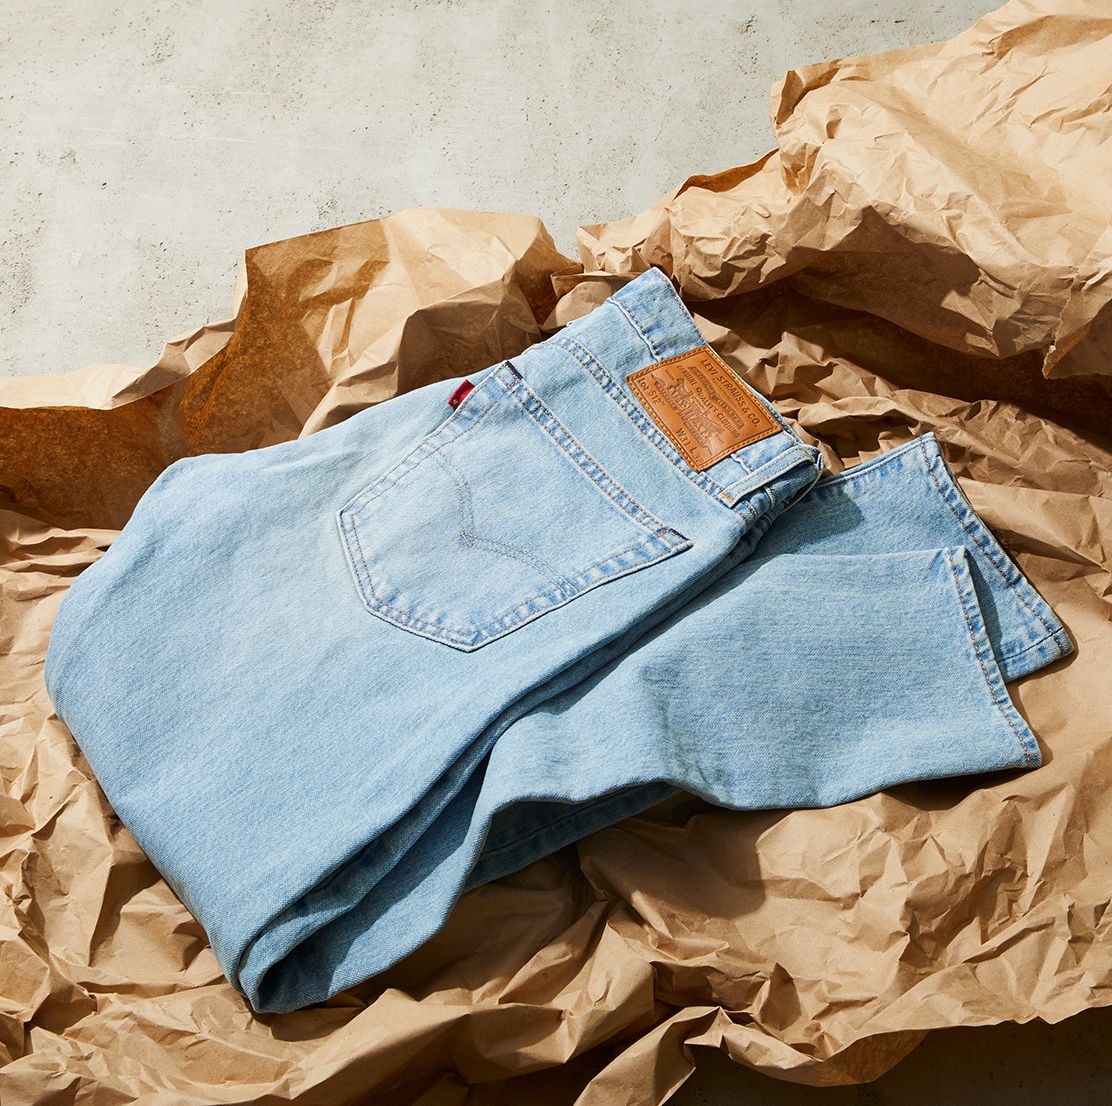 Levi's 512 Jeans Review - Best Affordable Levi's Slim Denim Pants